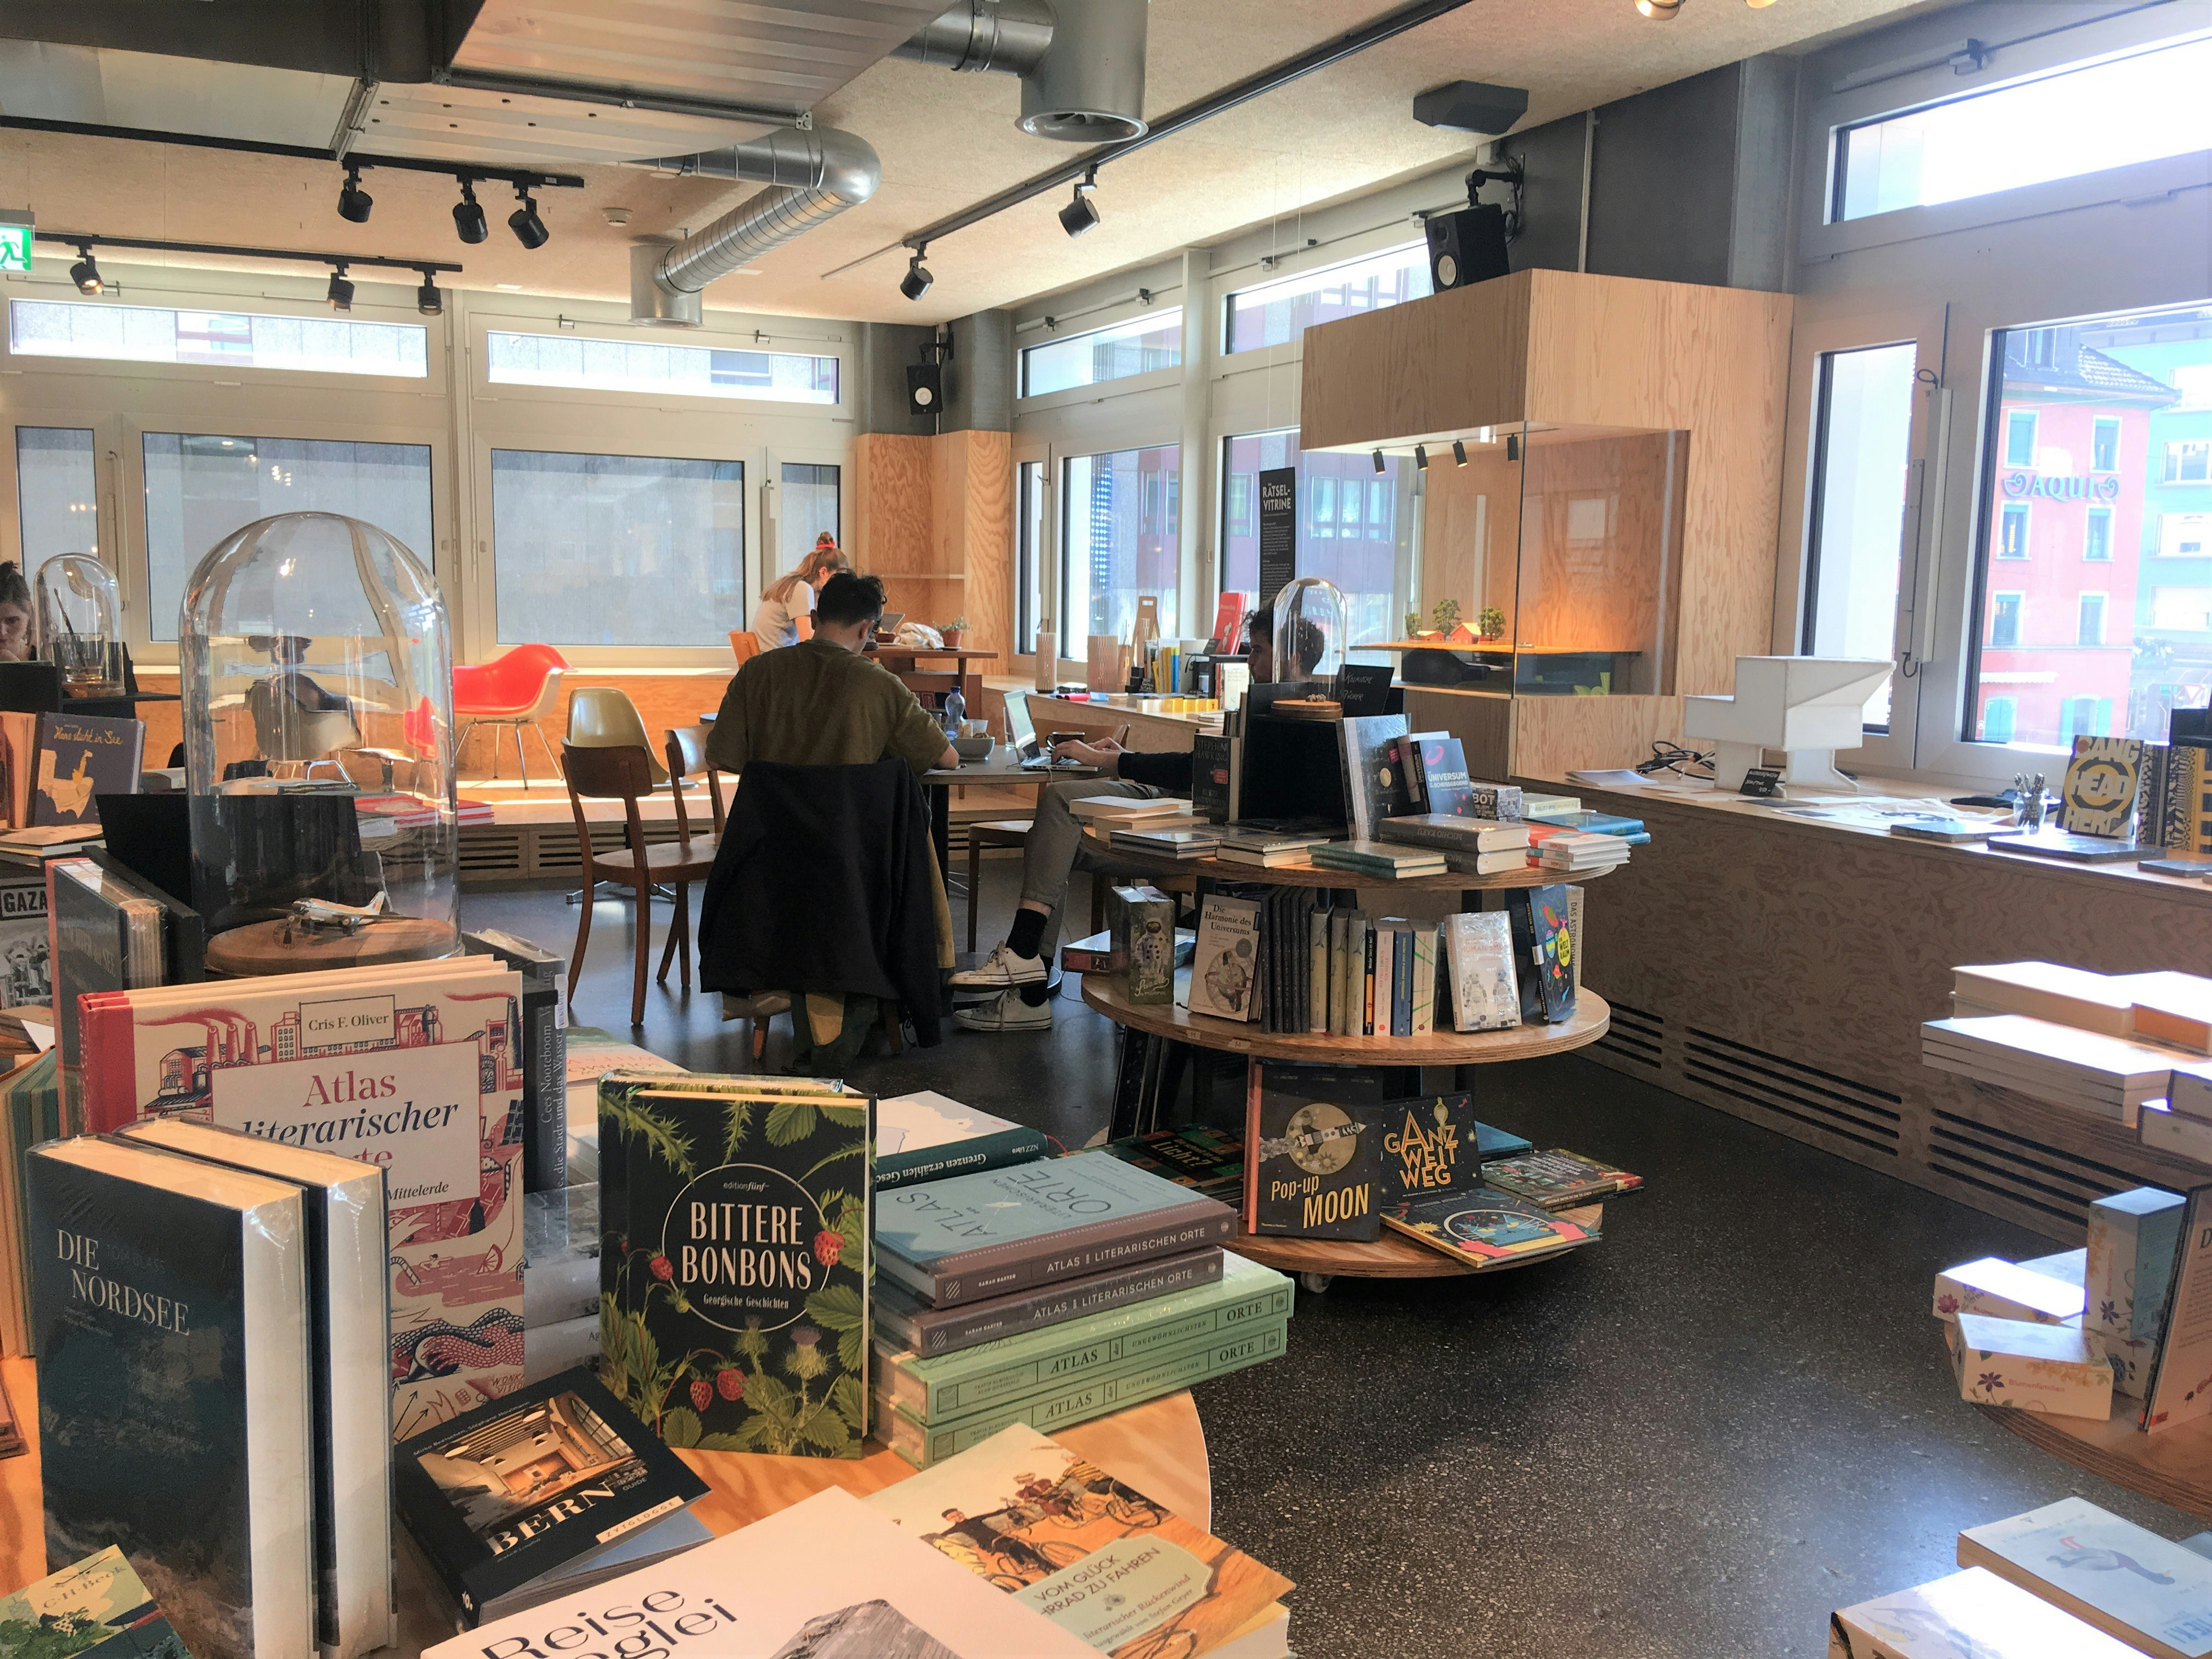 Cirkulära utställningsbord är täckta med böcker till salu i Kosmos: bortom, arbetar kunder vid bord medan väggarna är kantade av fönster med utsikt över andra byggnader utanför. 